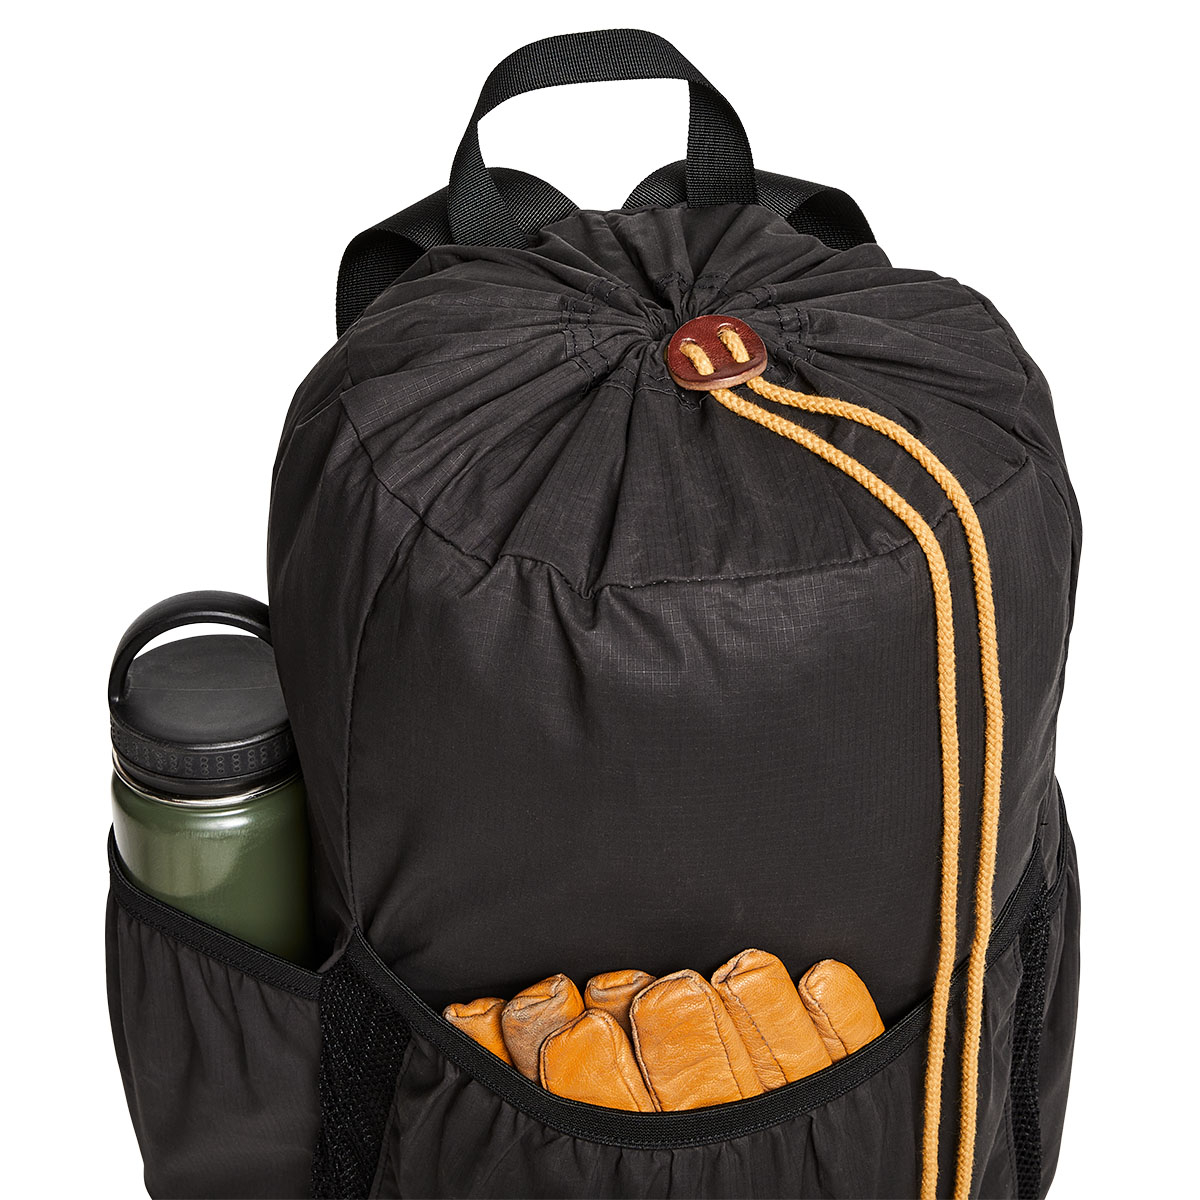 Filson Traveller Stowaway Backpack Stapleton Cinder, een ultralichte rugzak die kan worden opgeborgen in je bagage